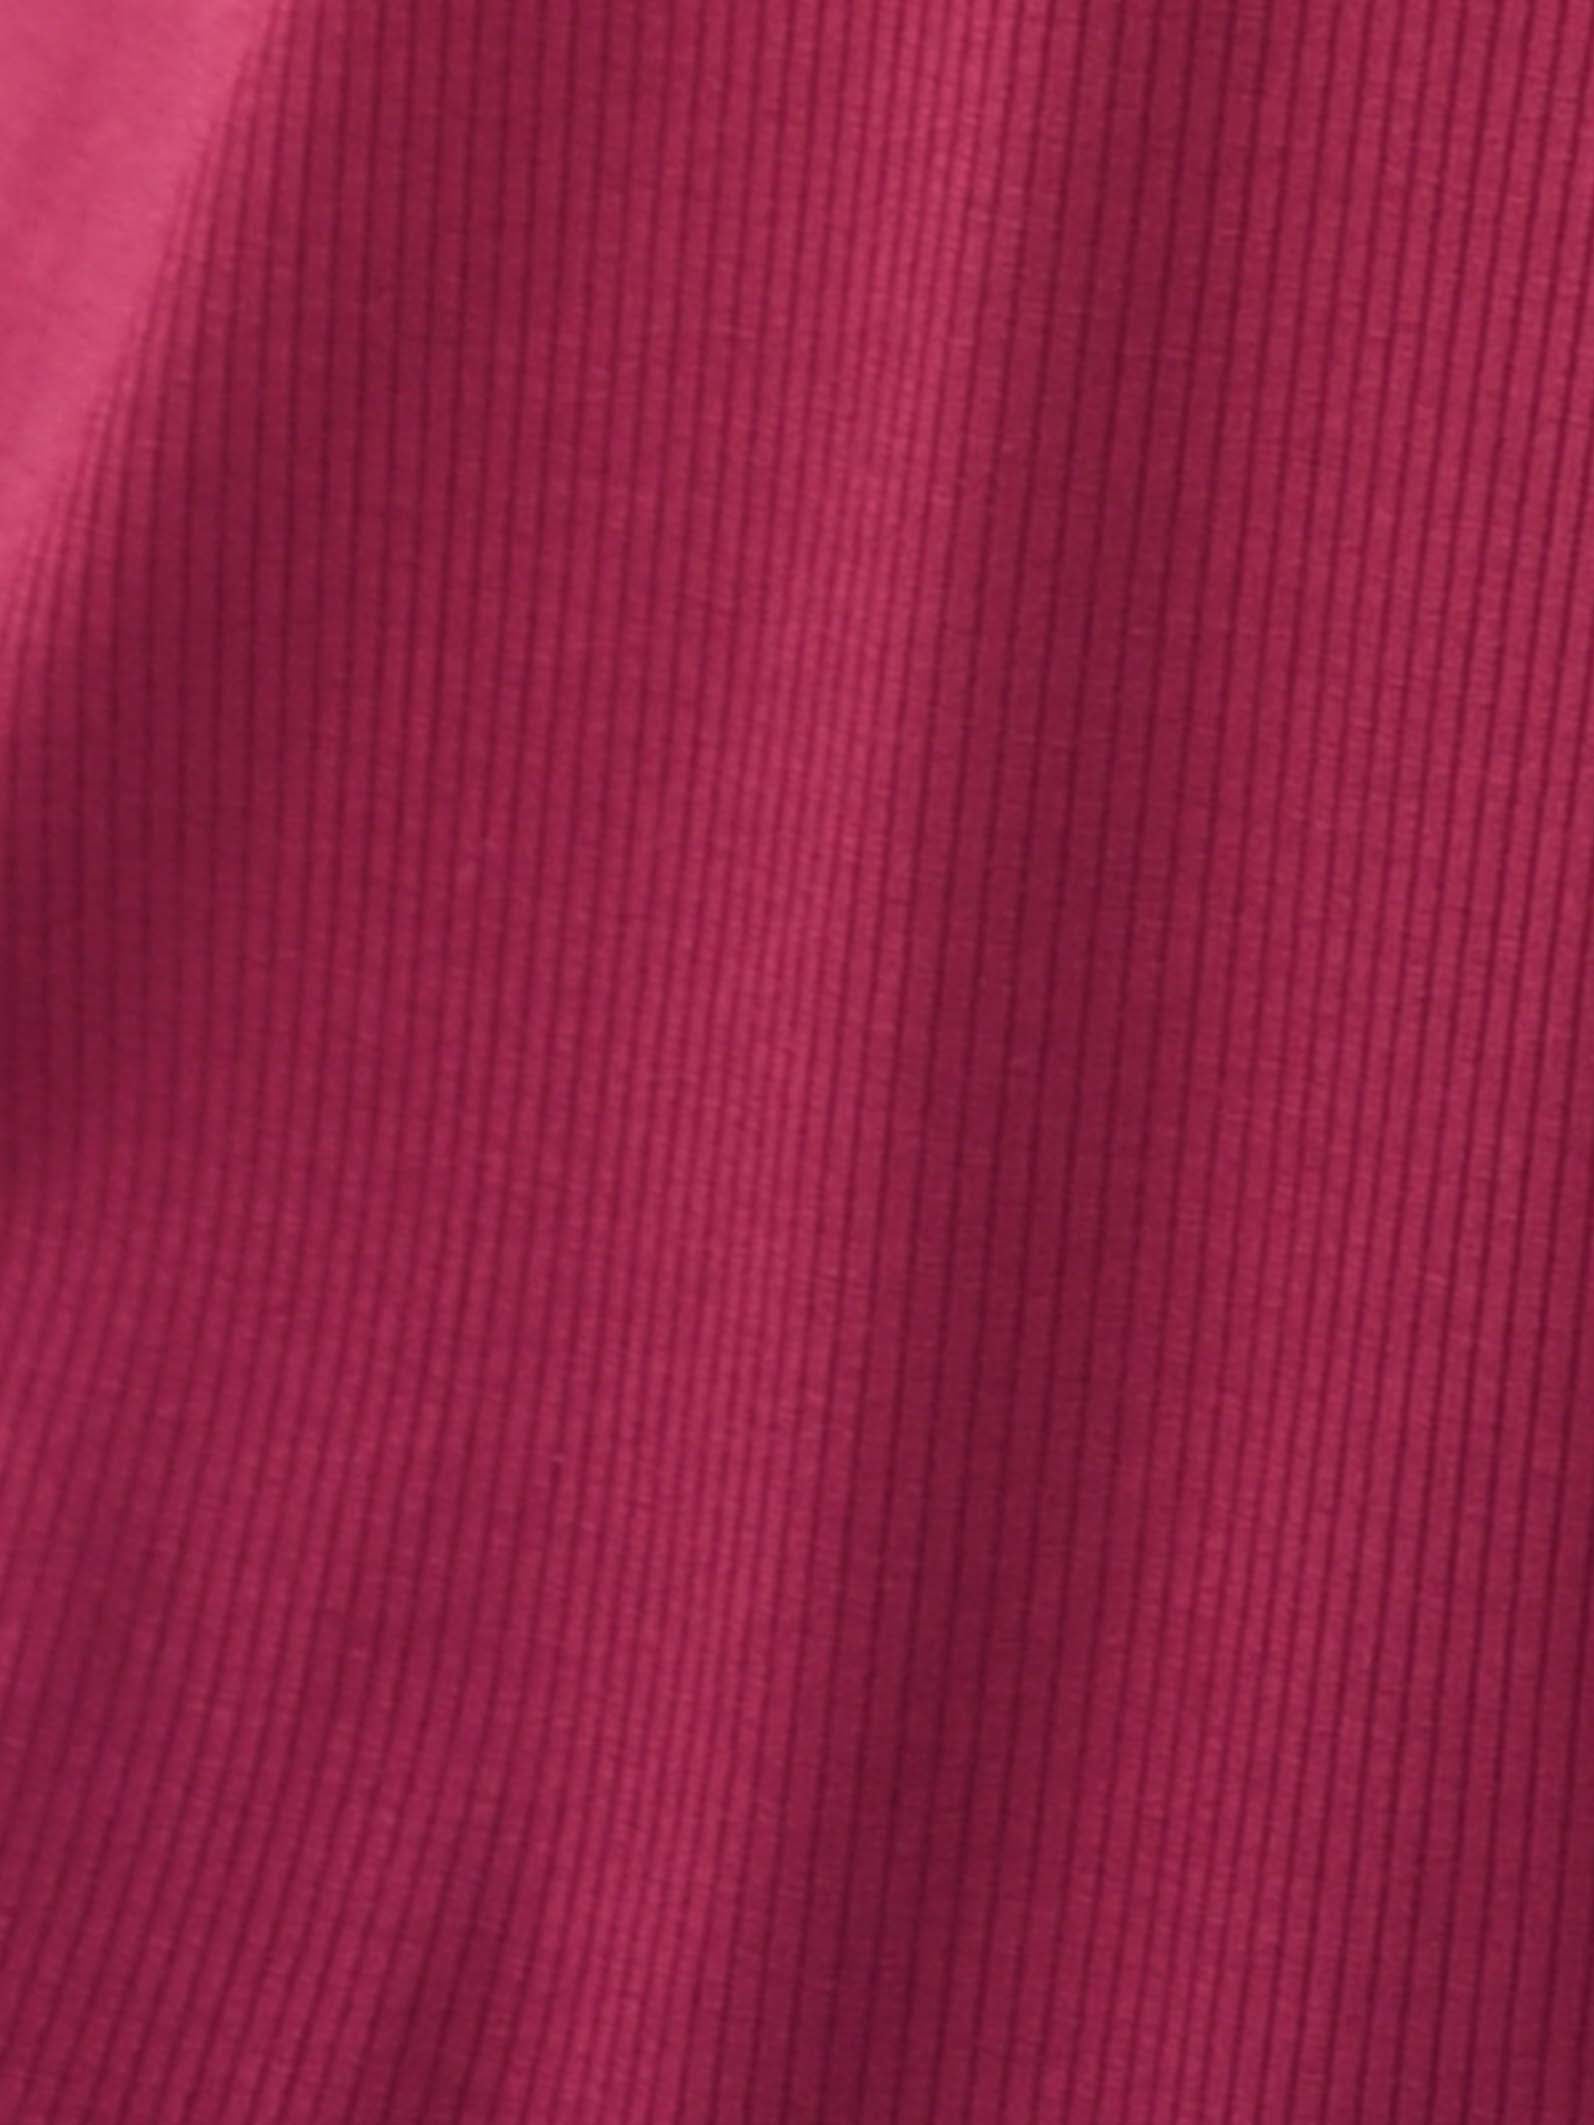 Robe rose cotelée